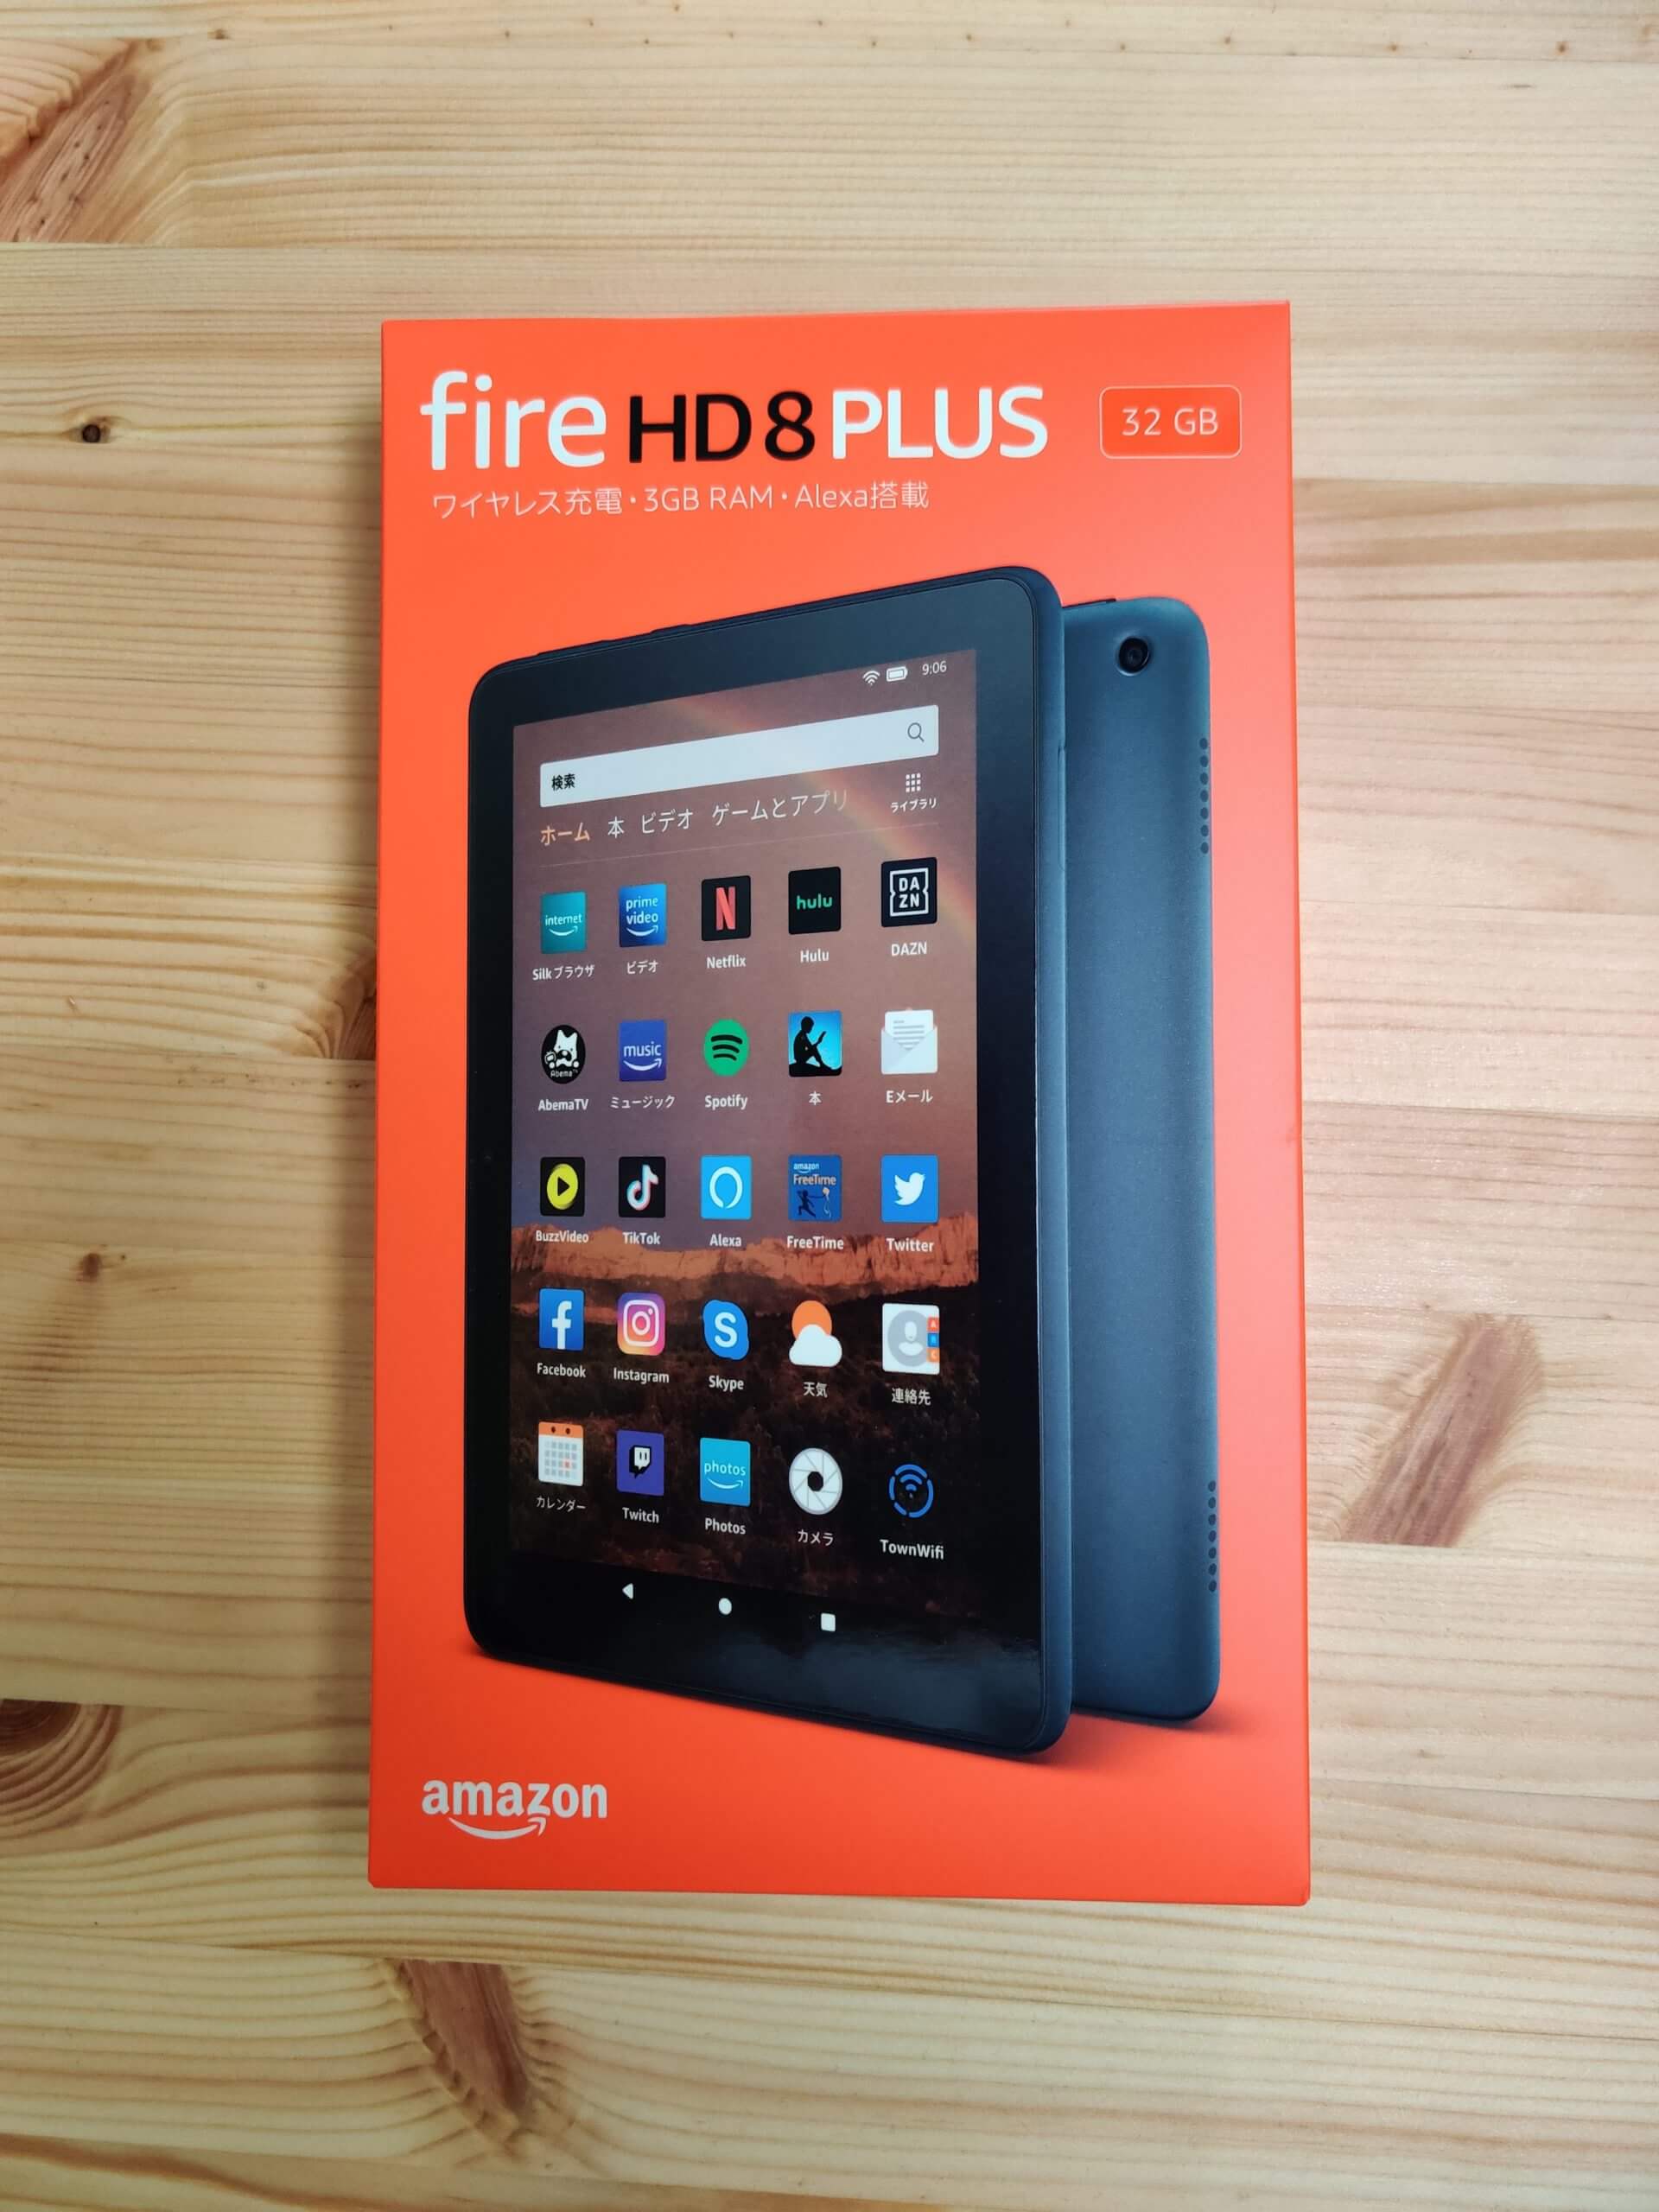 AmazonプライムデーでFire HD 8、Fire HD 8 Plusを買った人が楽しめる 